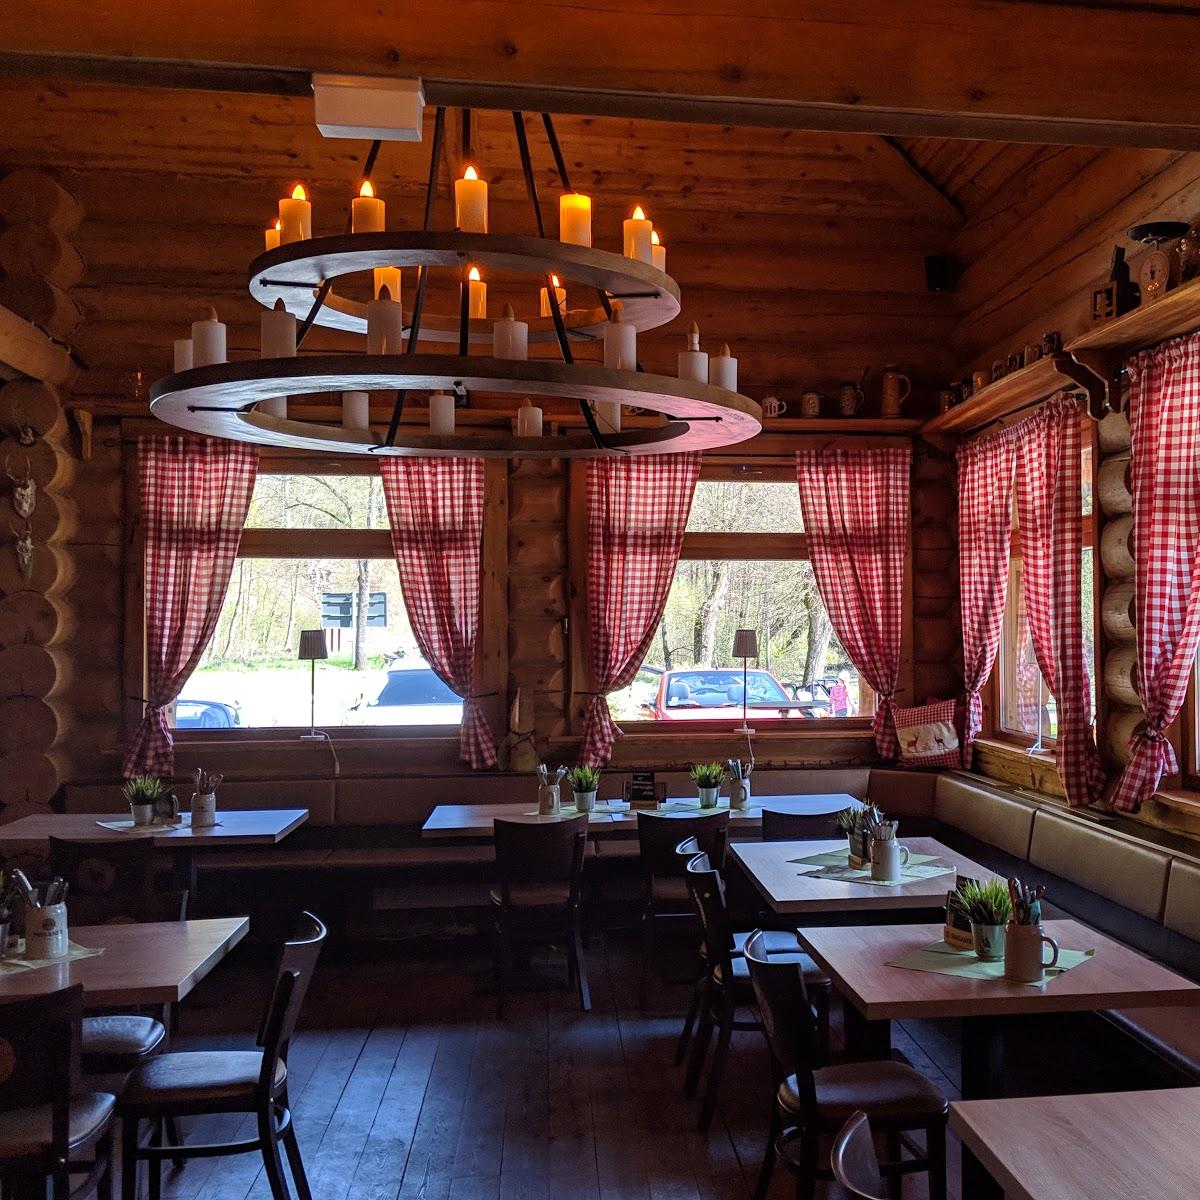 Restaurant "Wirtshaus zum Netzkater" in Harztor